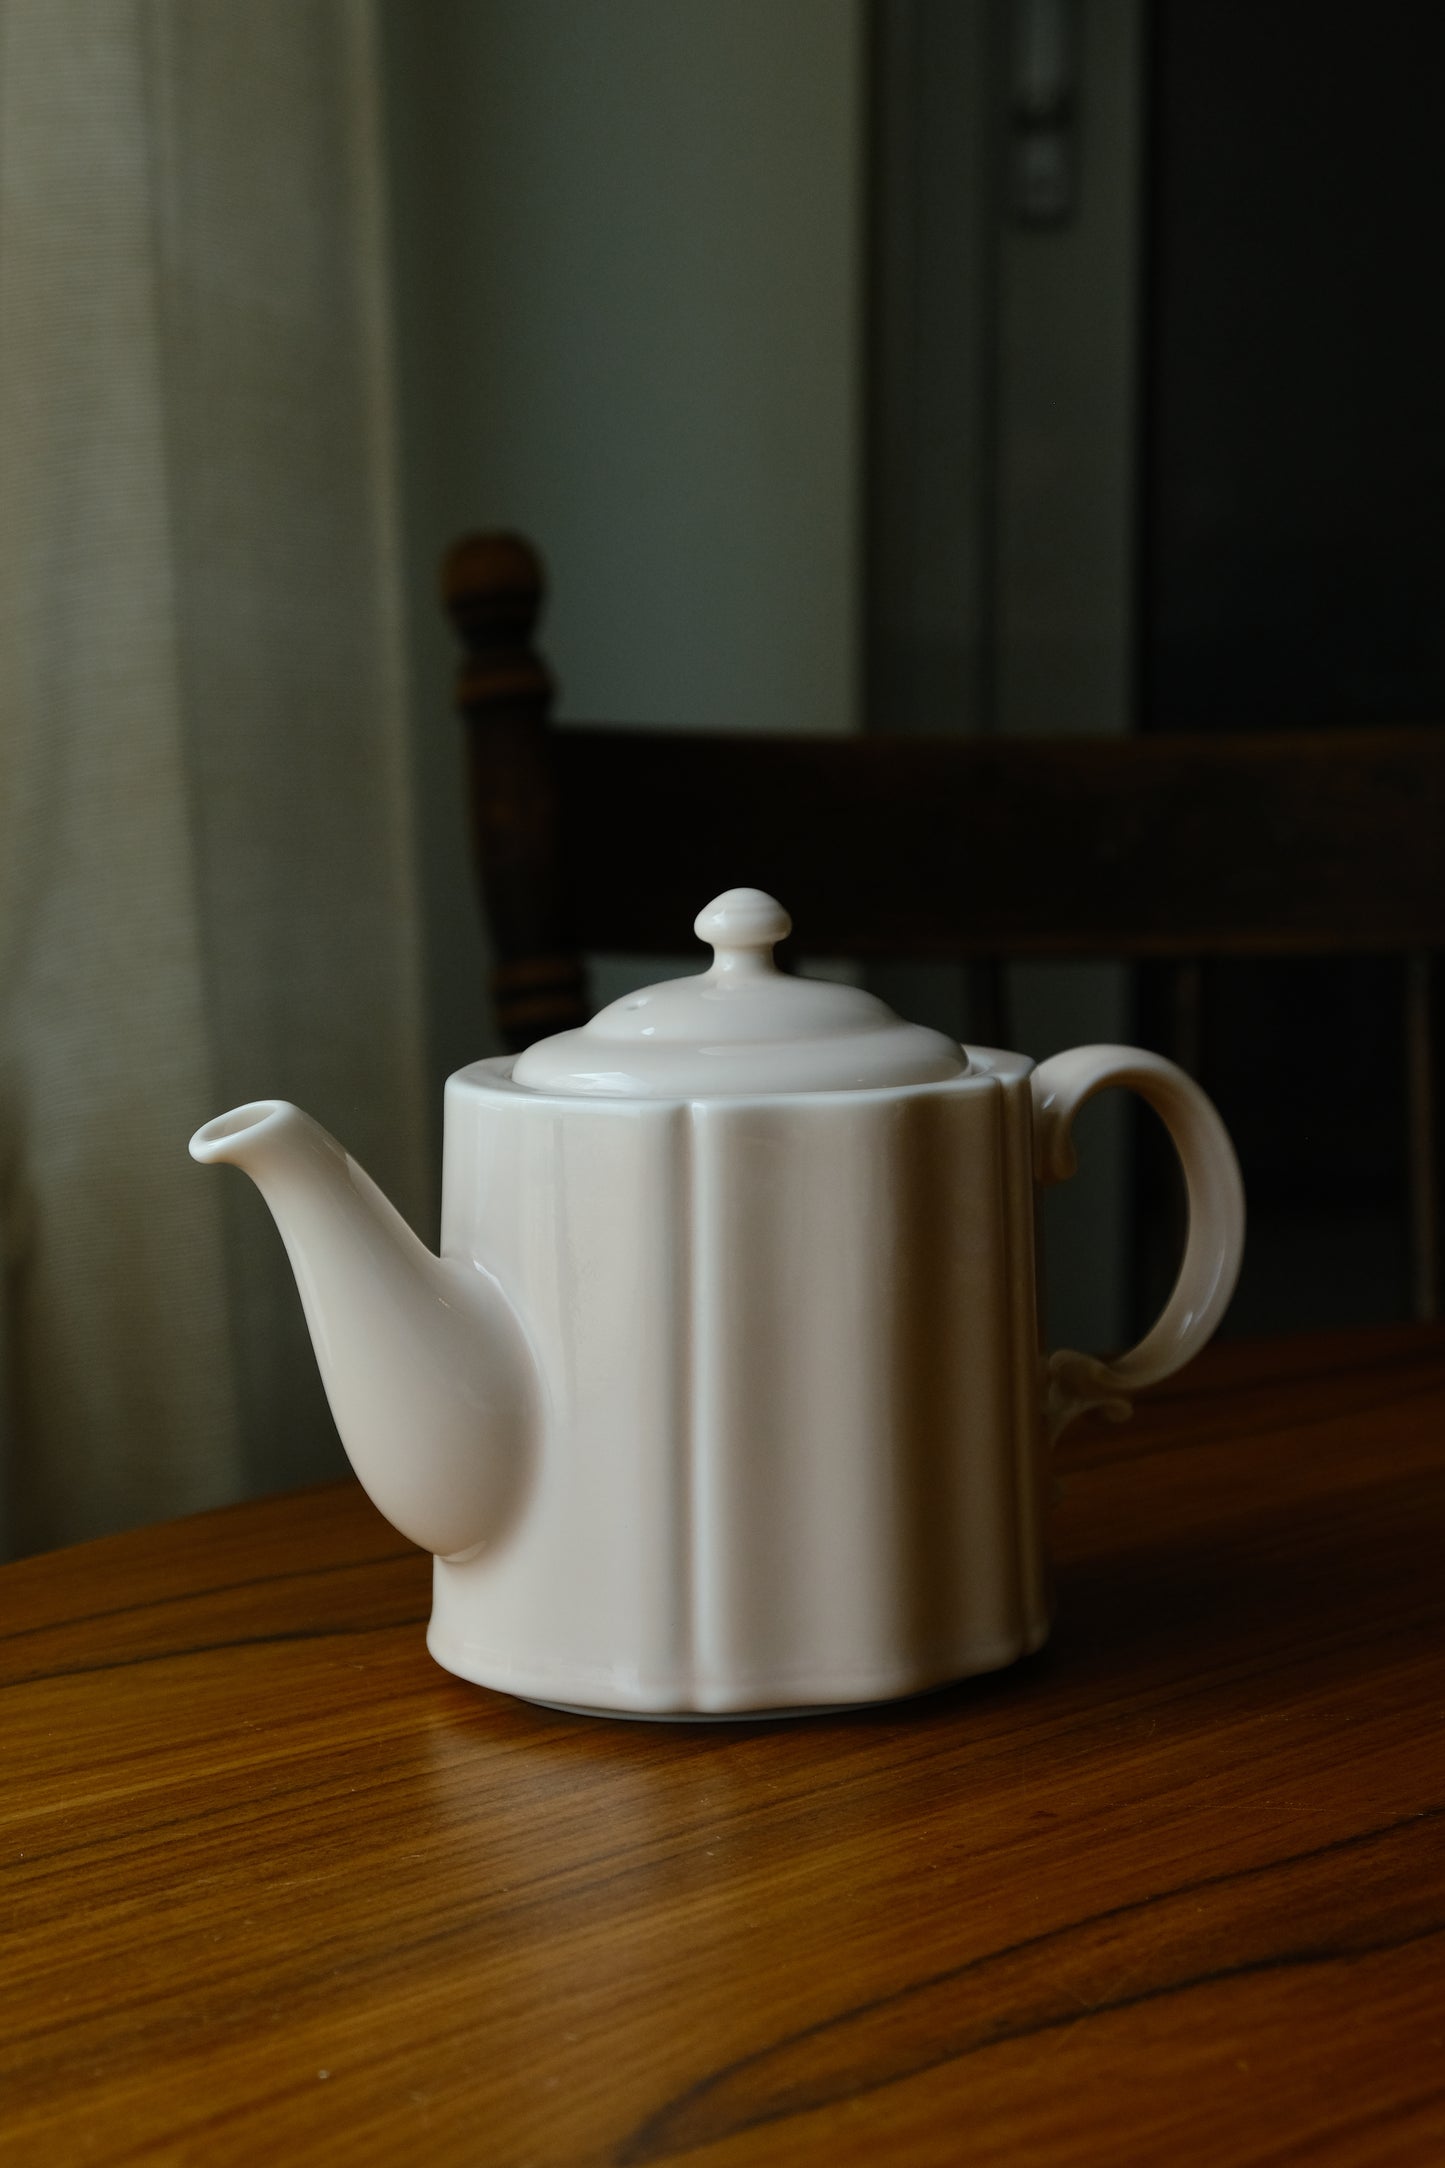 Studio M' Pungency Teapot